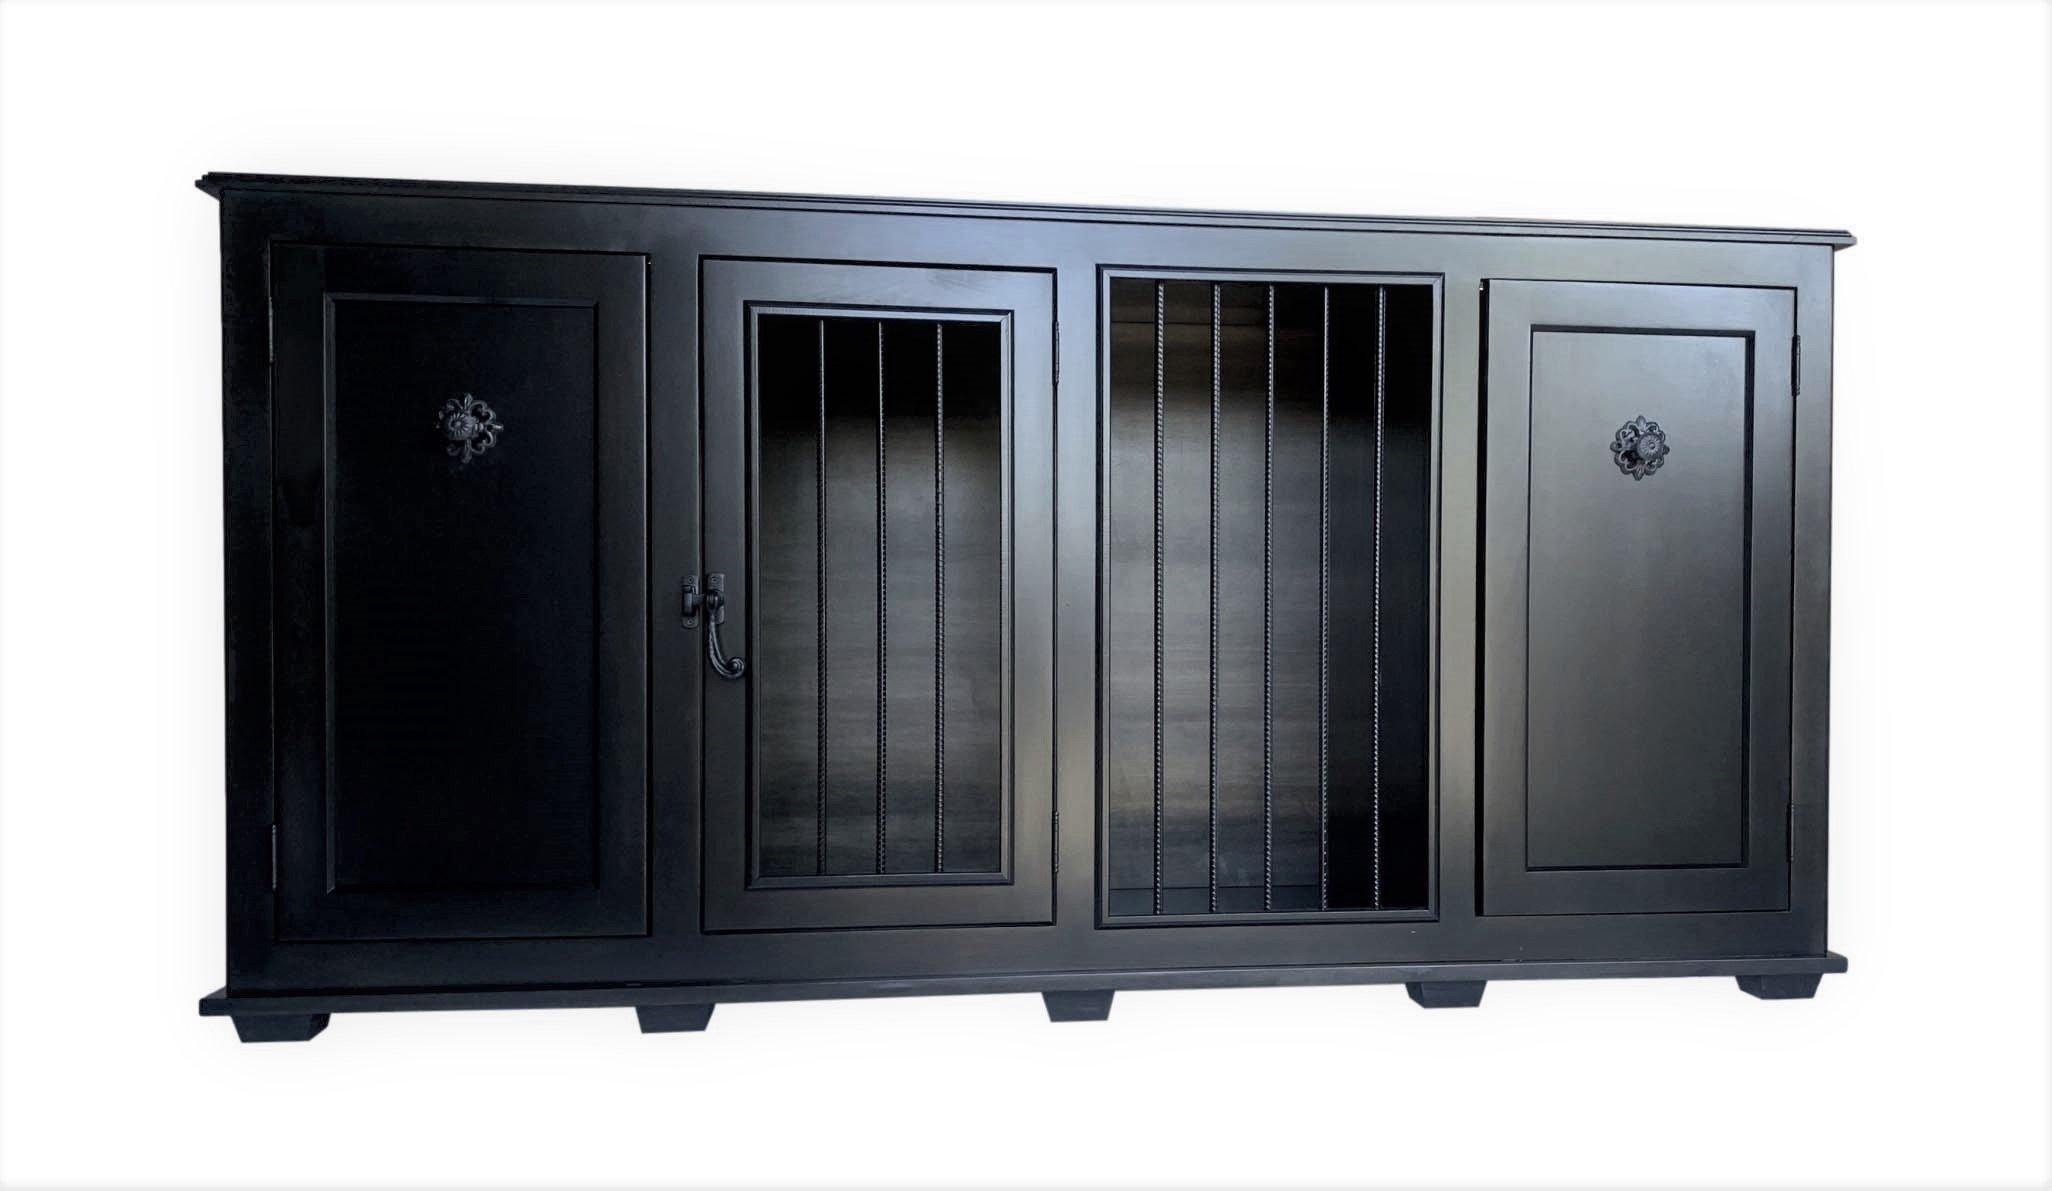 Custom Single Large Dog Crate with Storage Cabinets - Carolina Dog Crate Co.